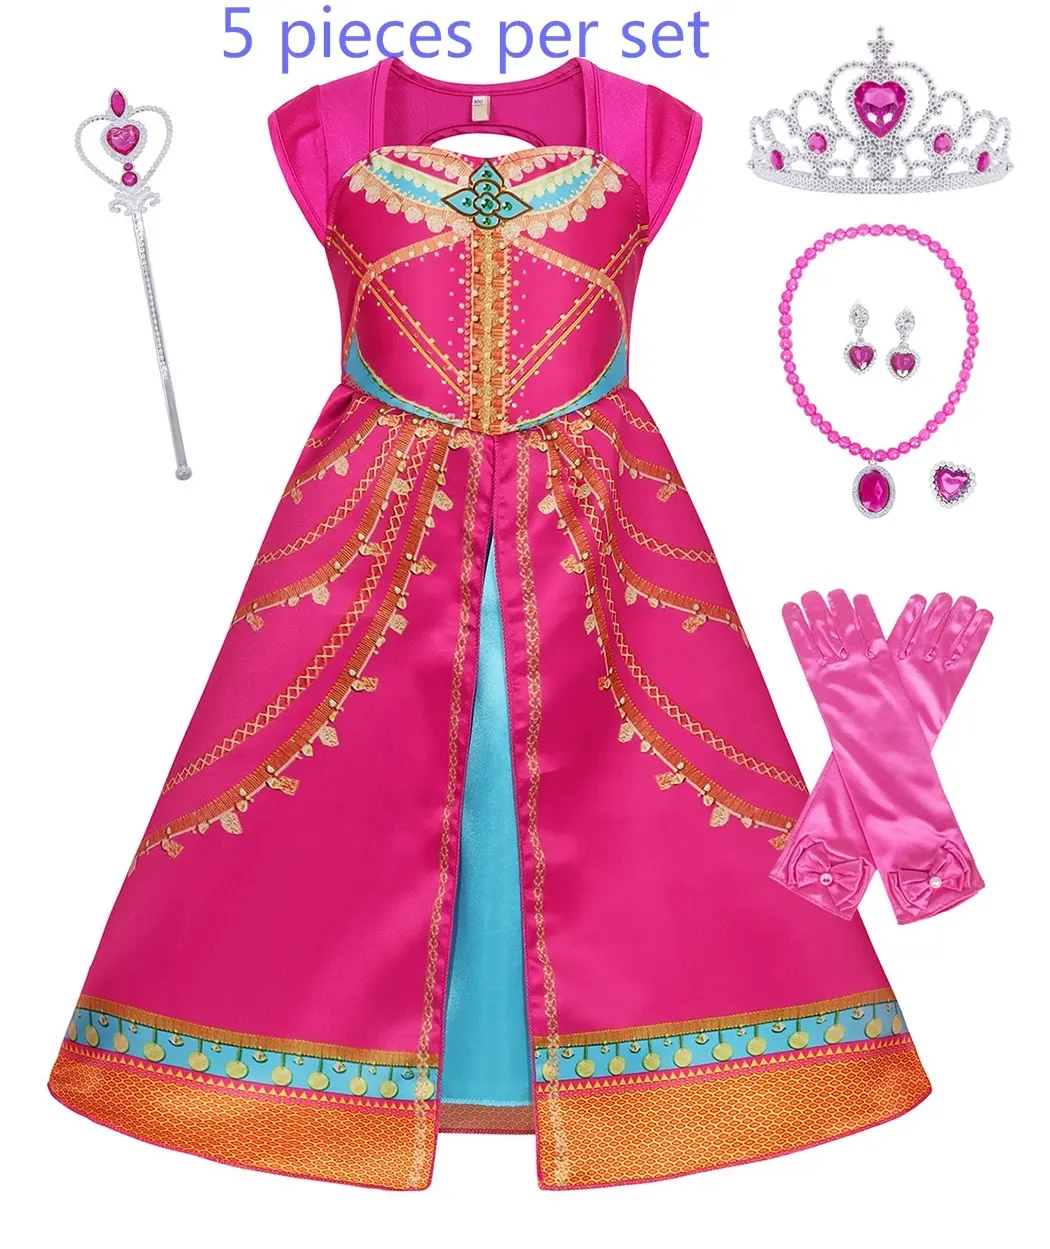 Fantasia de jasmine para crianças, vestido de princesa do aladin, roupas de cosplay para escola e fantasias, vestido casual para fotos